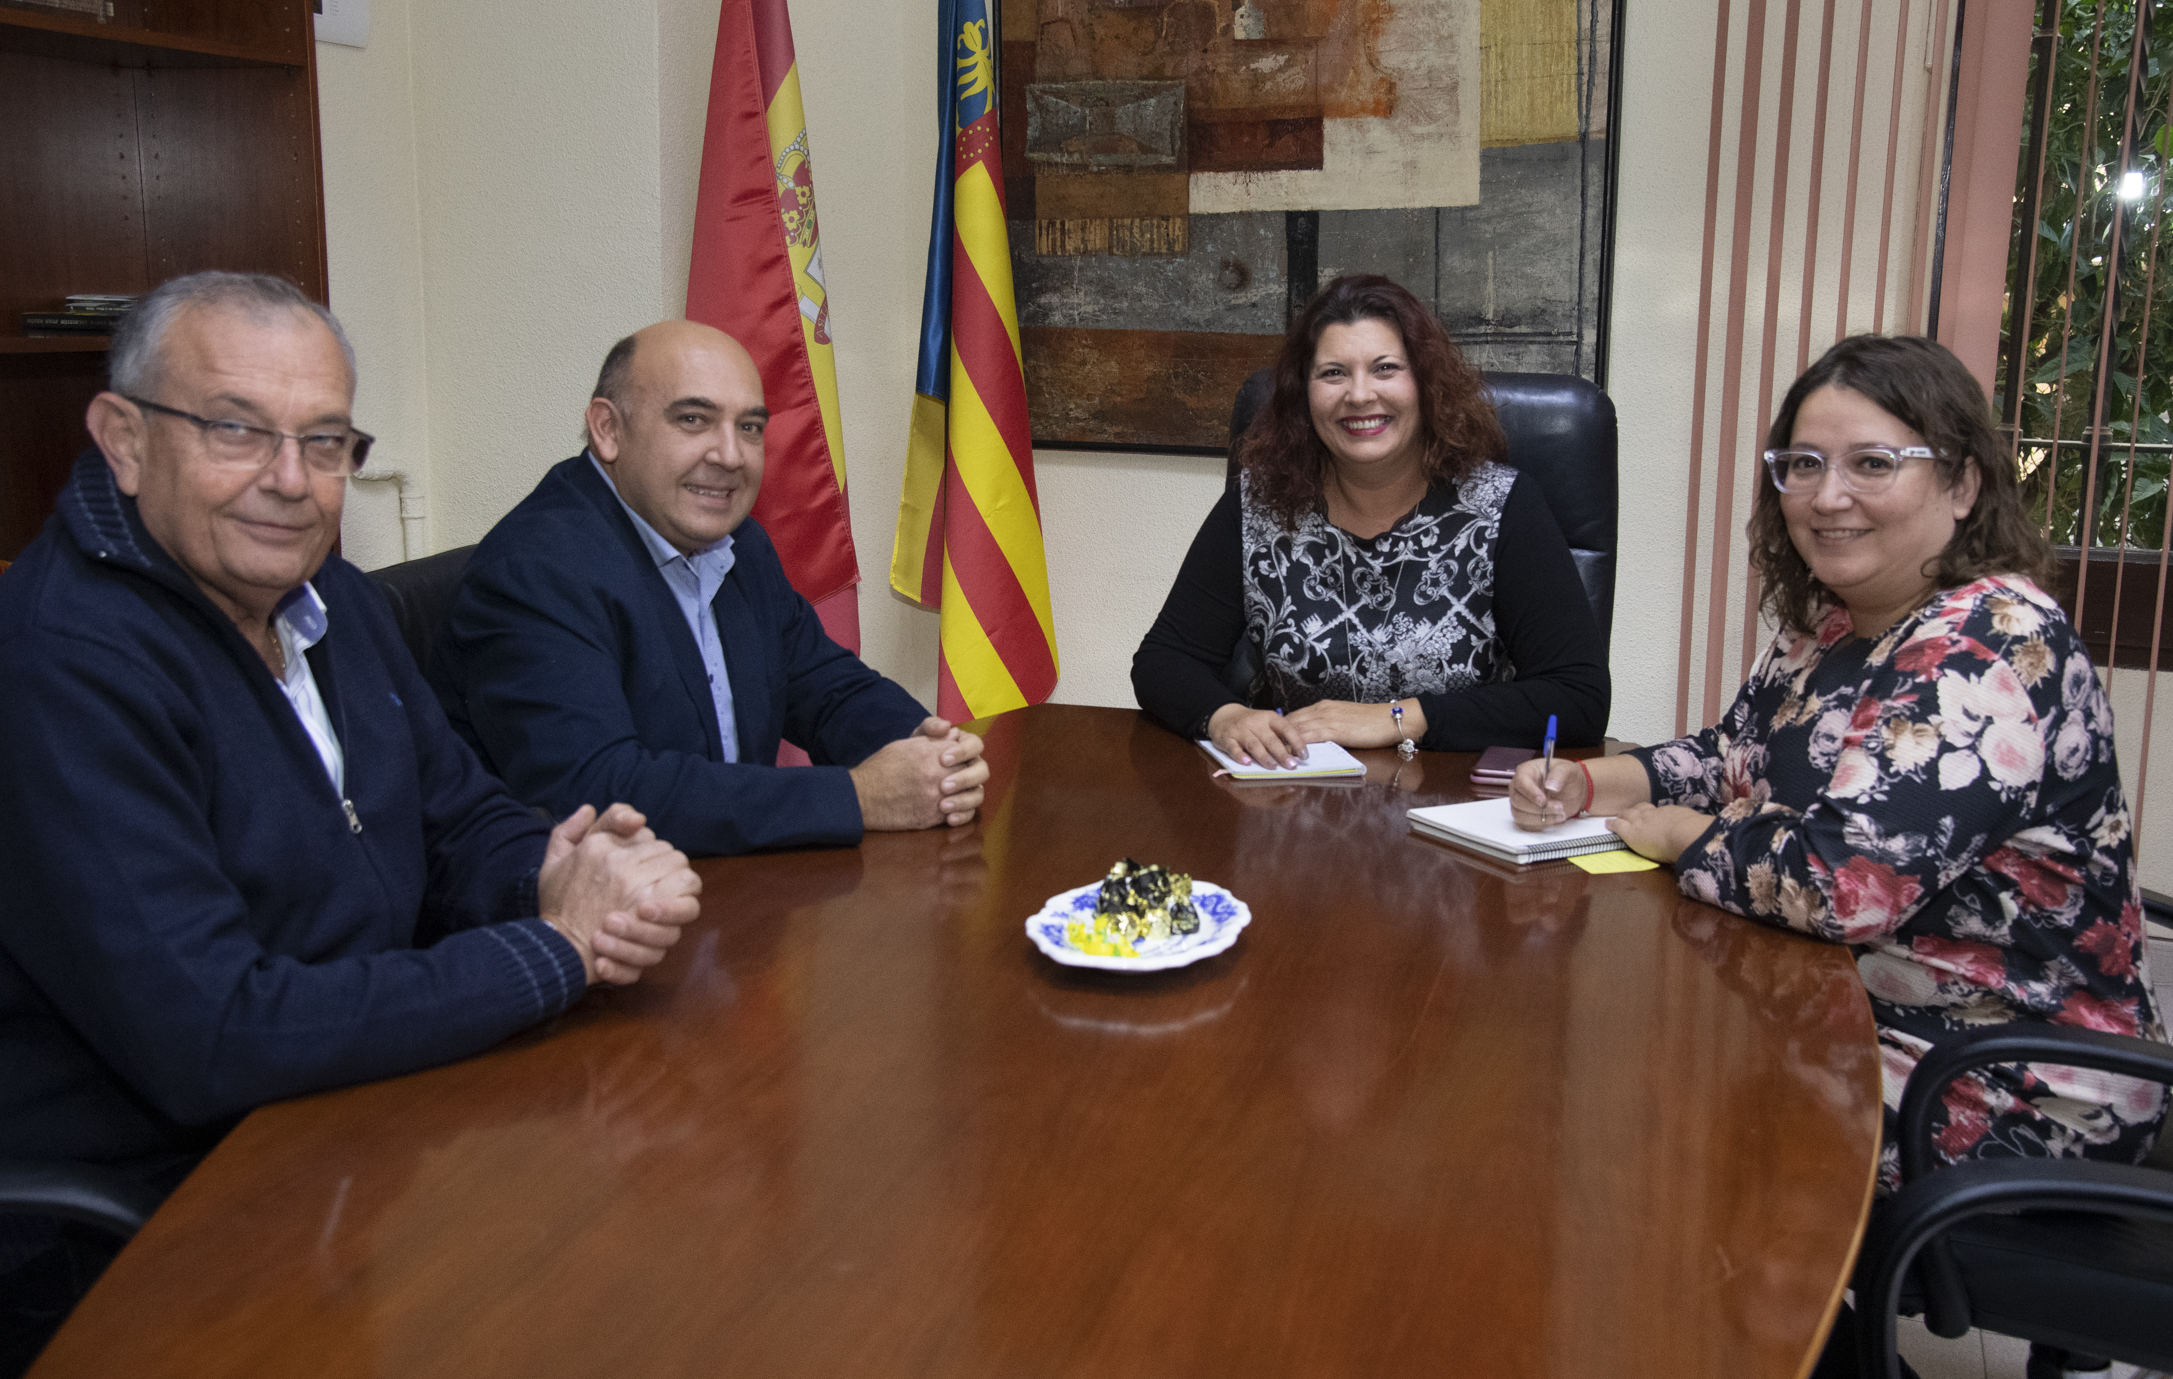 La Diputación aprueba las subvenciones a las gaiatas de Castellón y a las fallas de la provincia por un montante económico que ronda los 50.000 euros